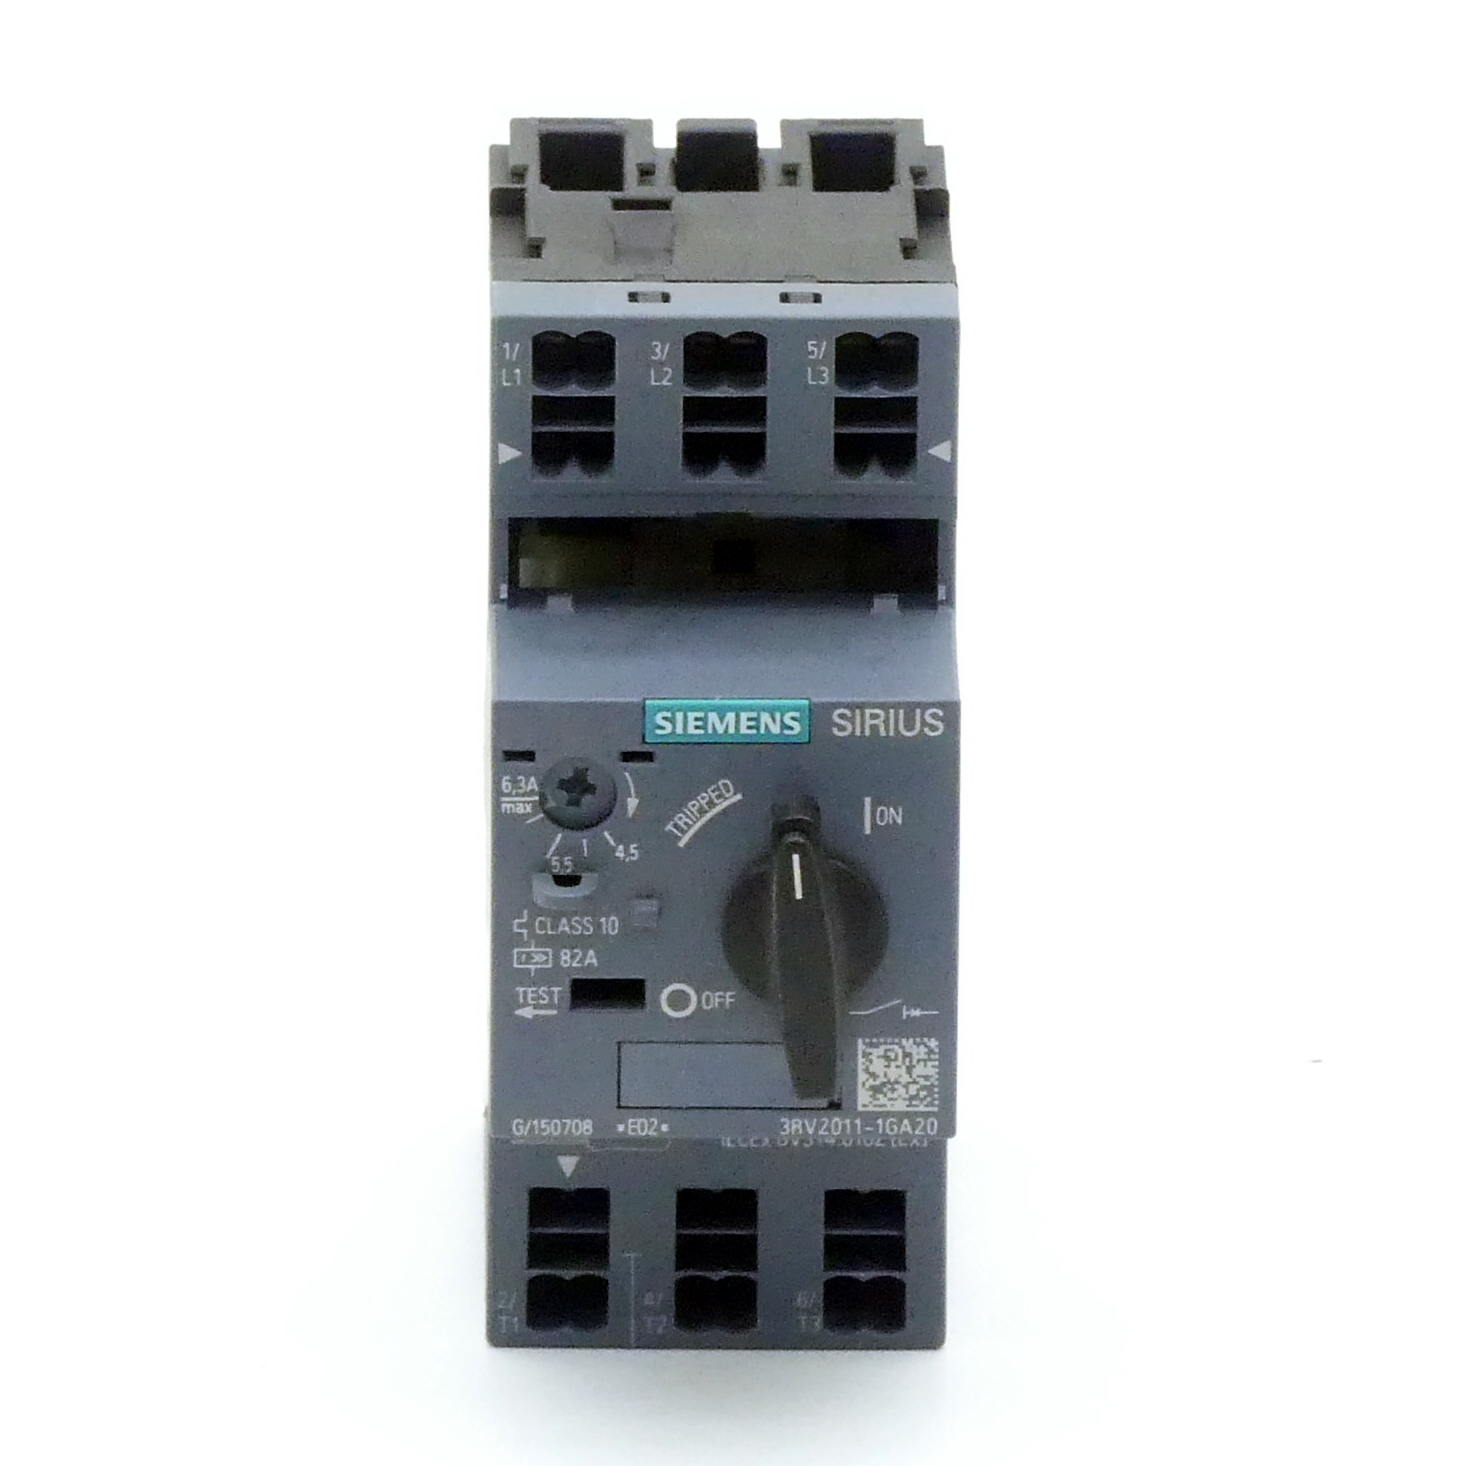 Circuit breaker 3RV2011-1GA20 